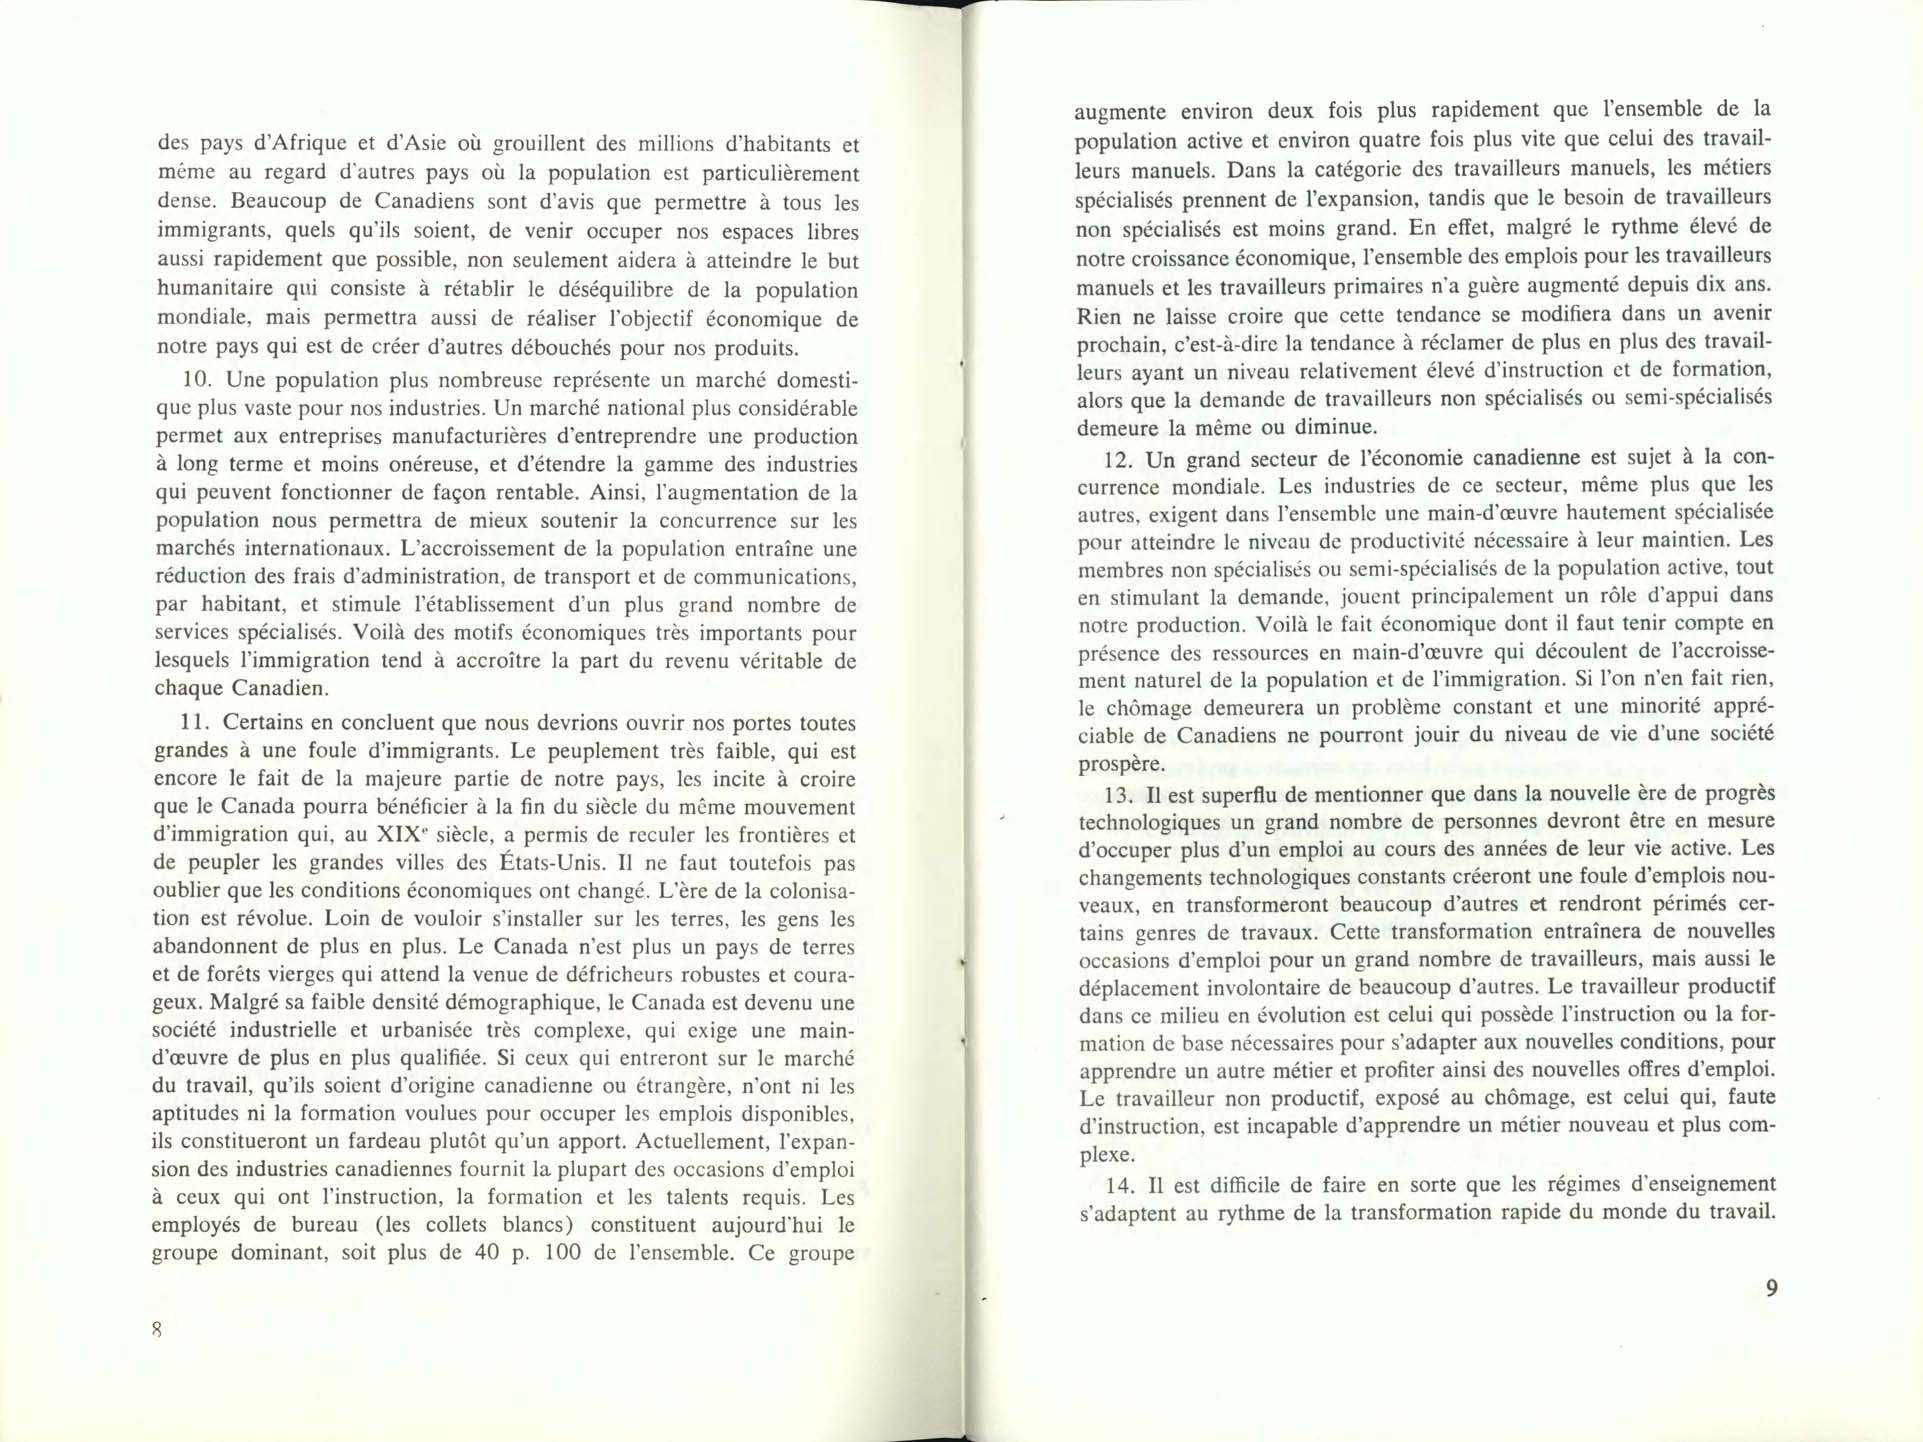 Page 8, 9 Livre Blanc sur l’immigration, 1966